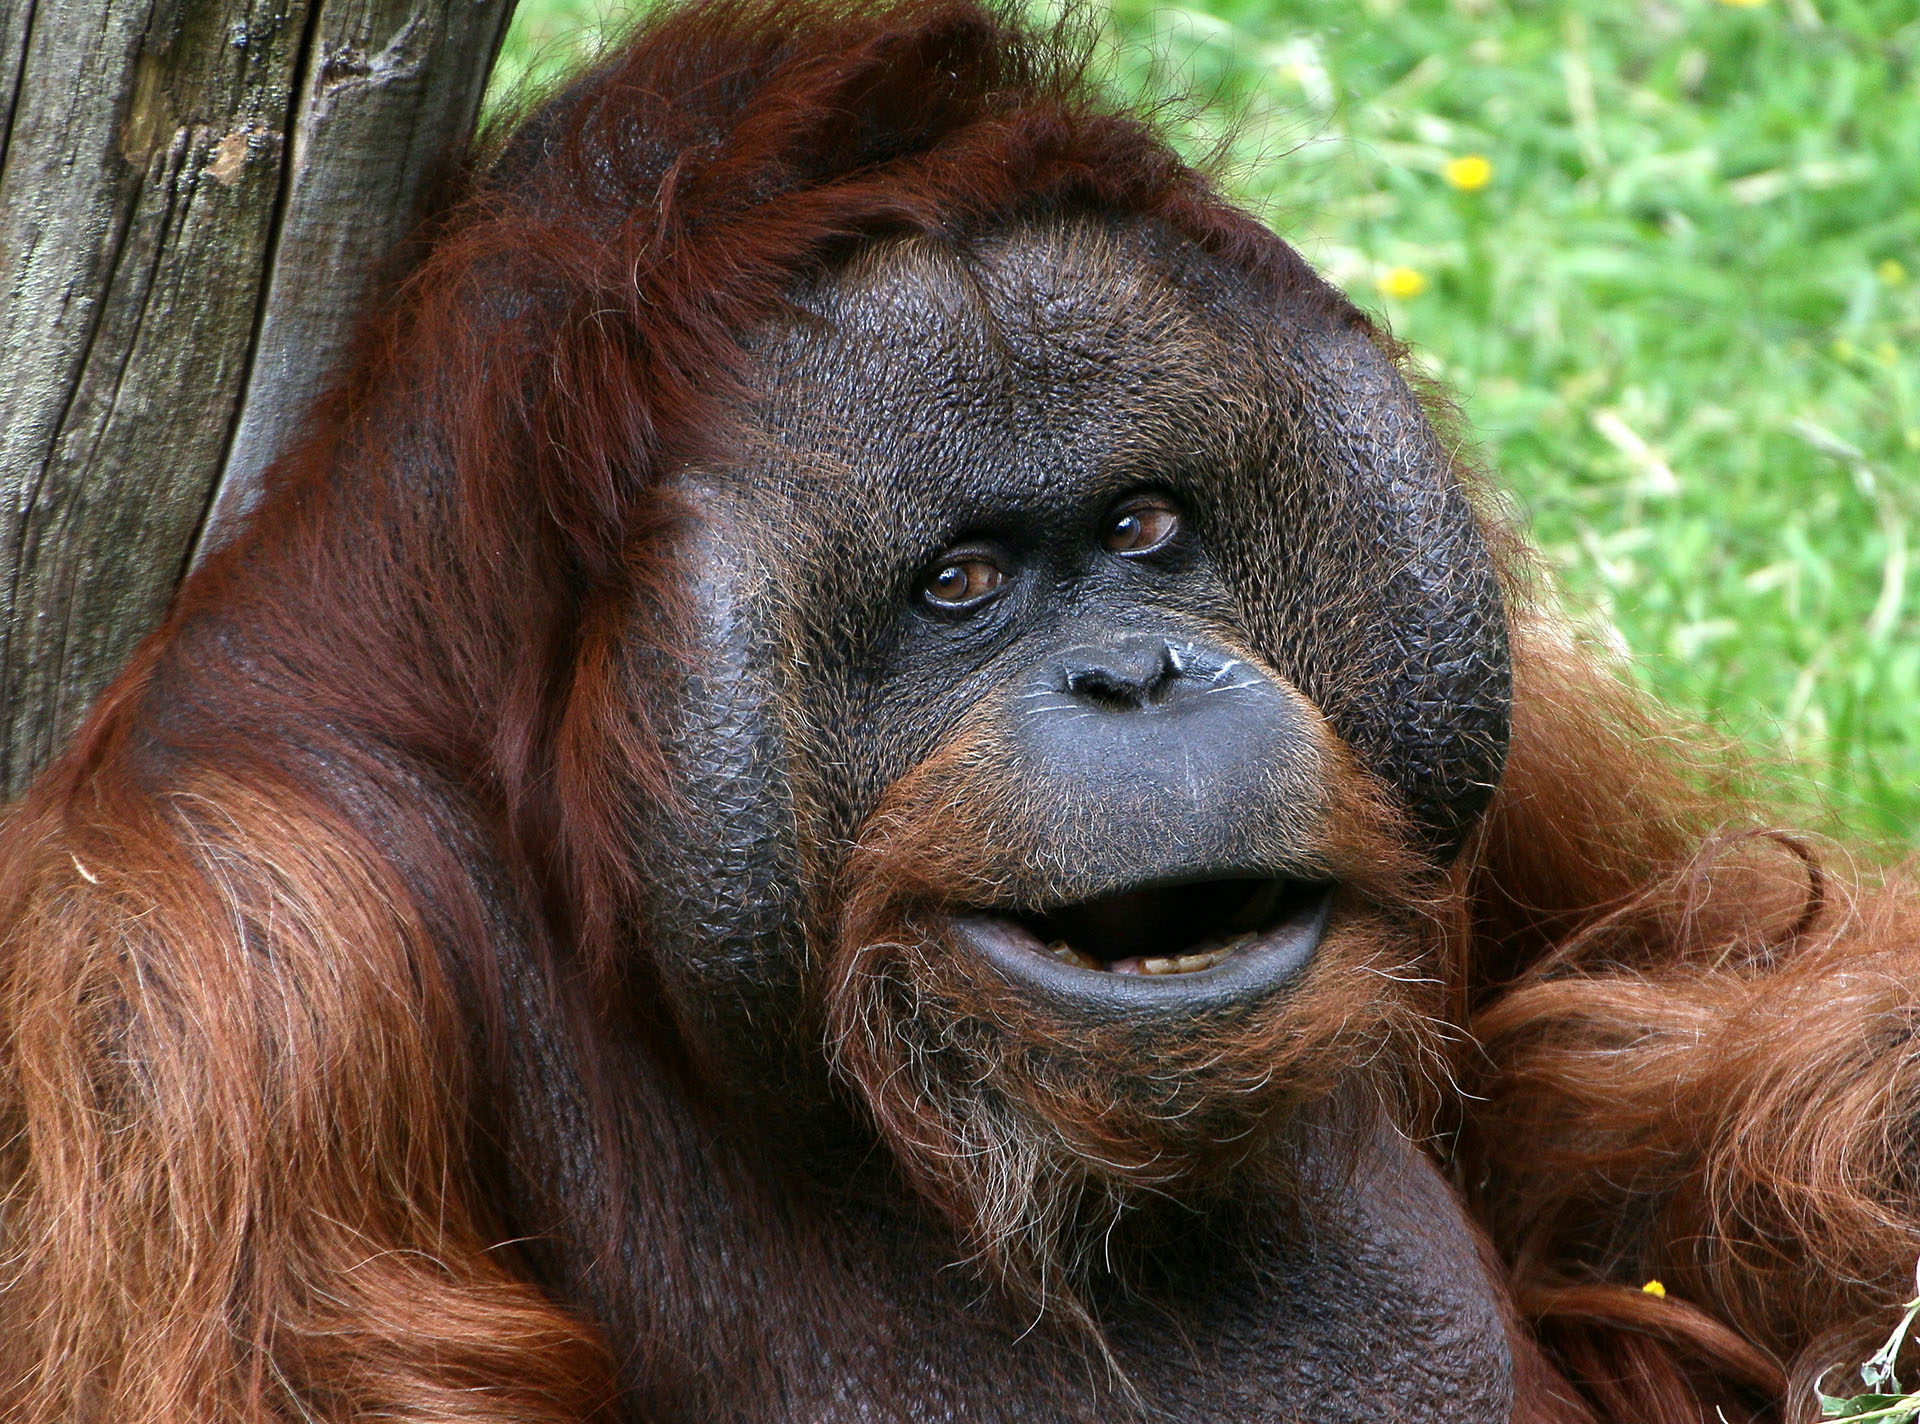 Orangután de Borneo: existen unos 14 mil individuos por lo que está considerado en peligro crítico de extinción (Getty Images)